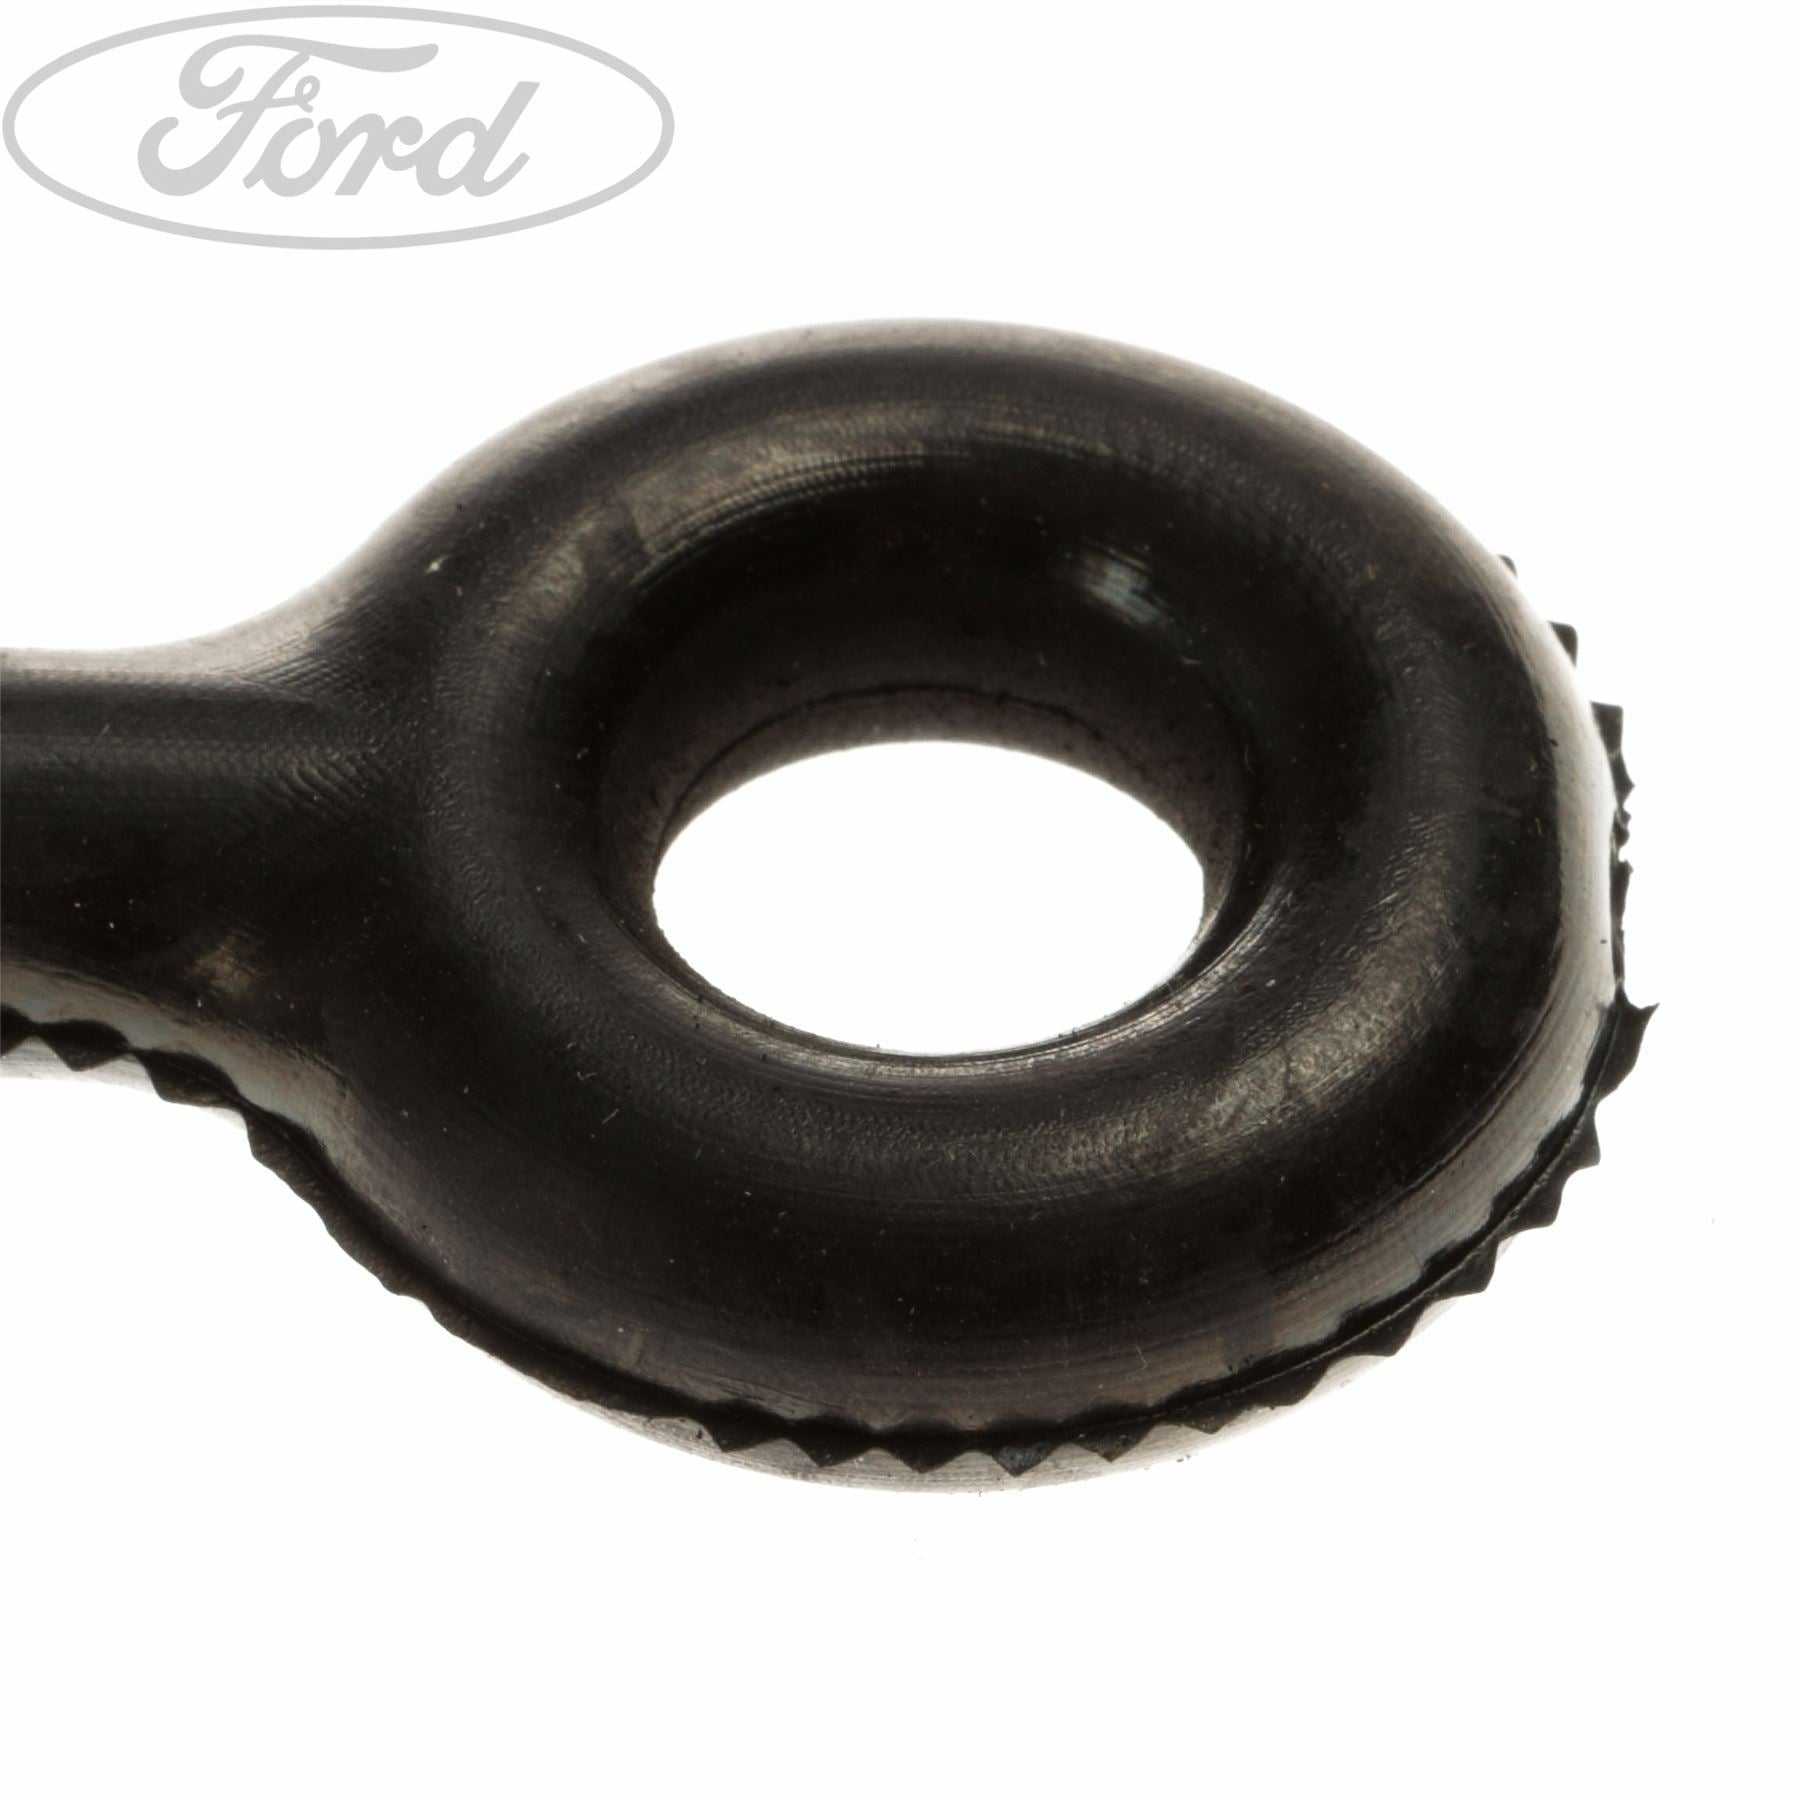 Ford, TRANSIT JACKING KIT FIXING CLAMP